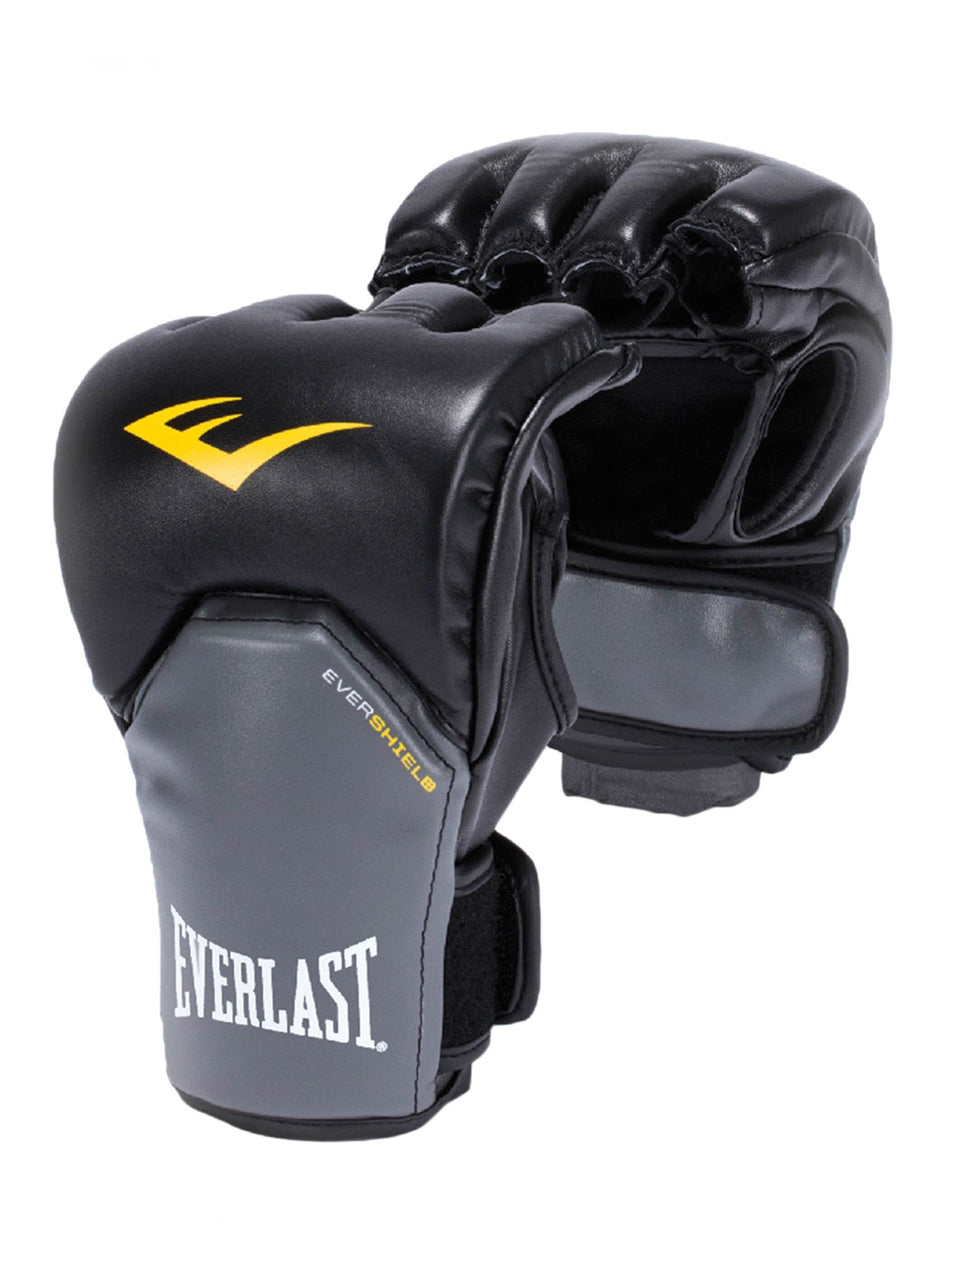 Everlast MMA Powerlock Training Glove - P00000159